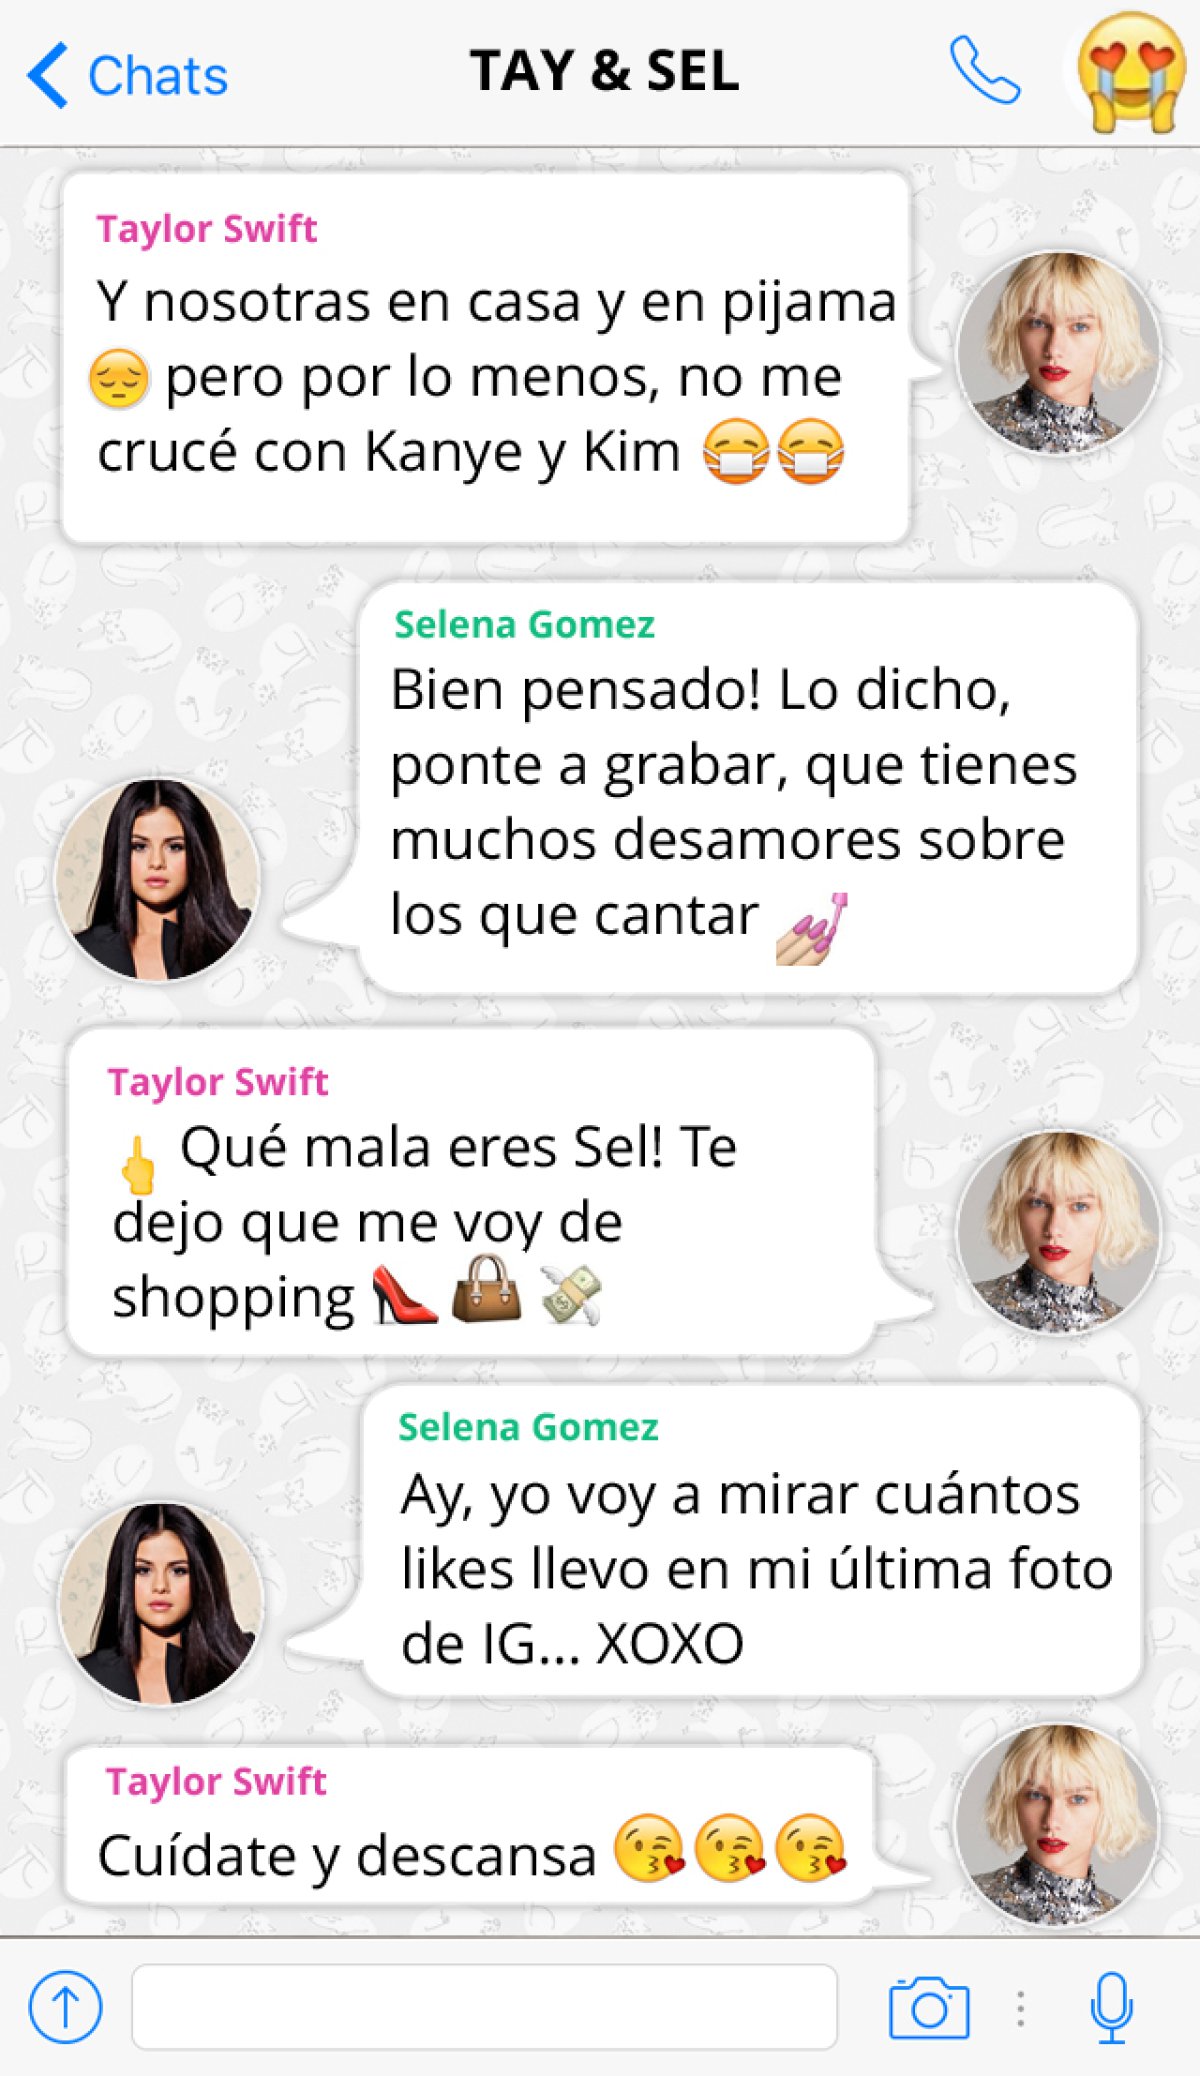 La conversación de WhatsApp de Taylor Swift y Selena Gomez